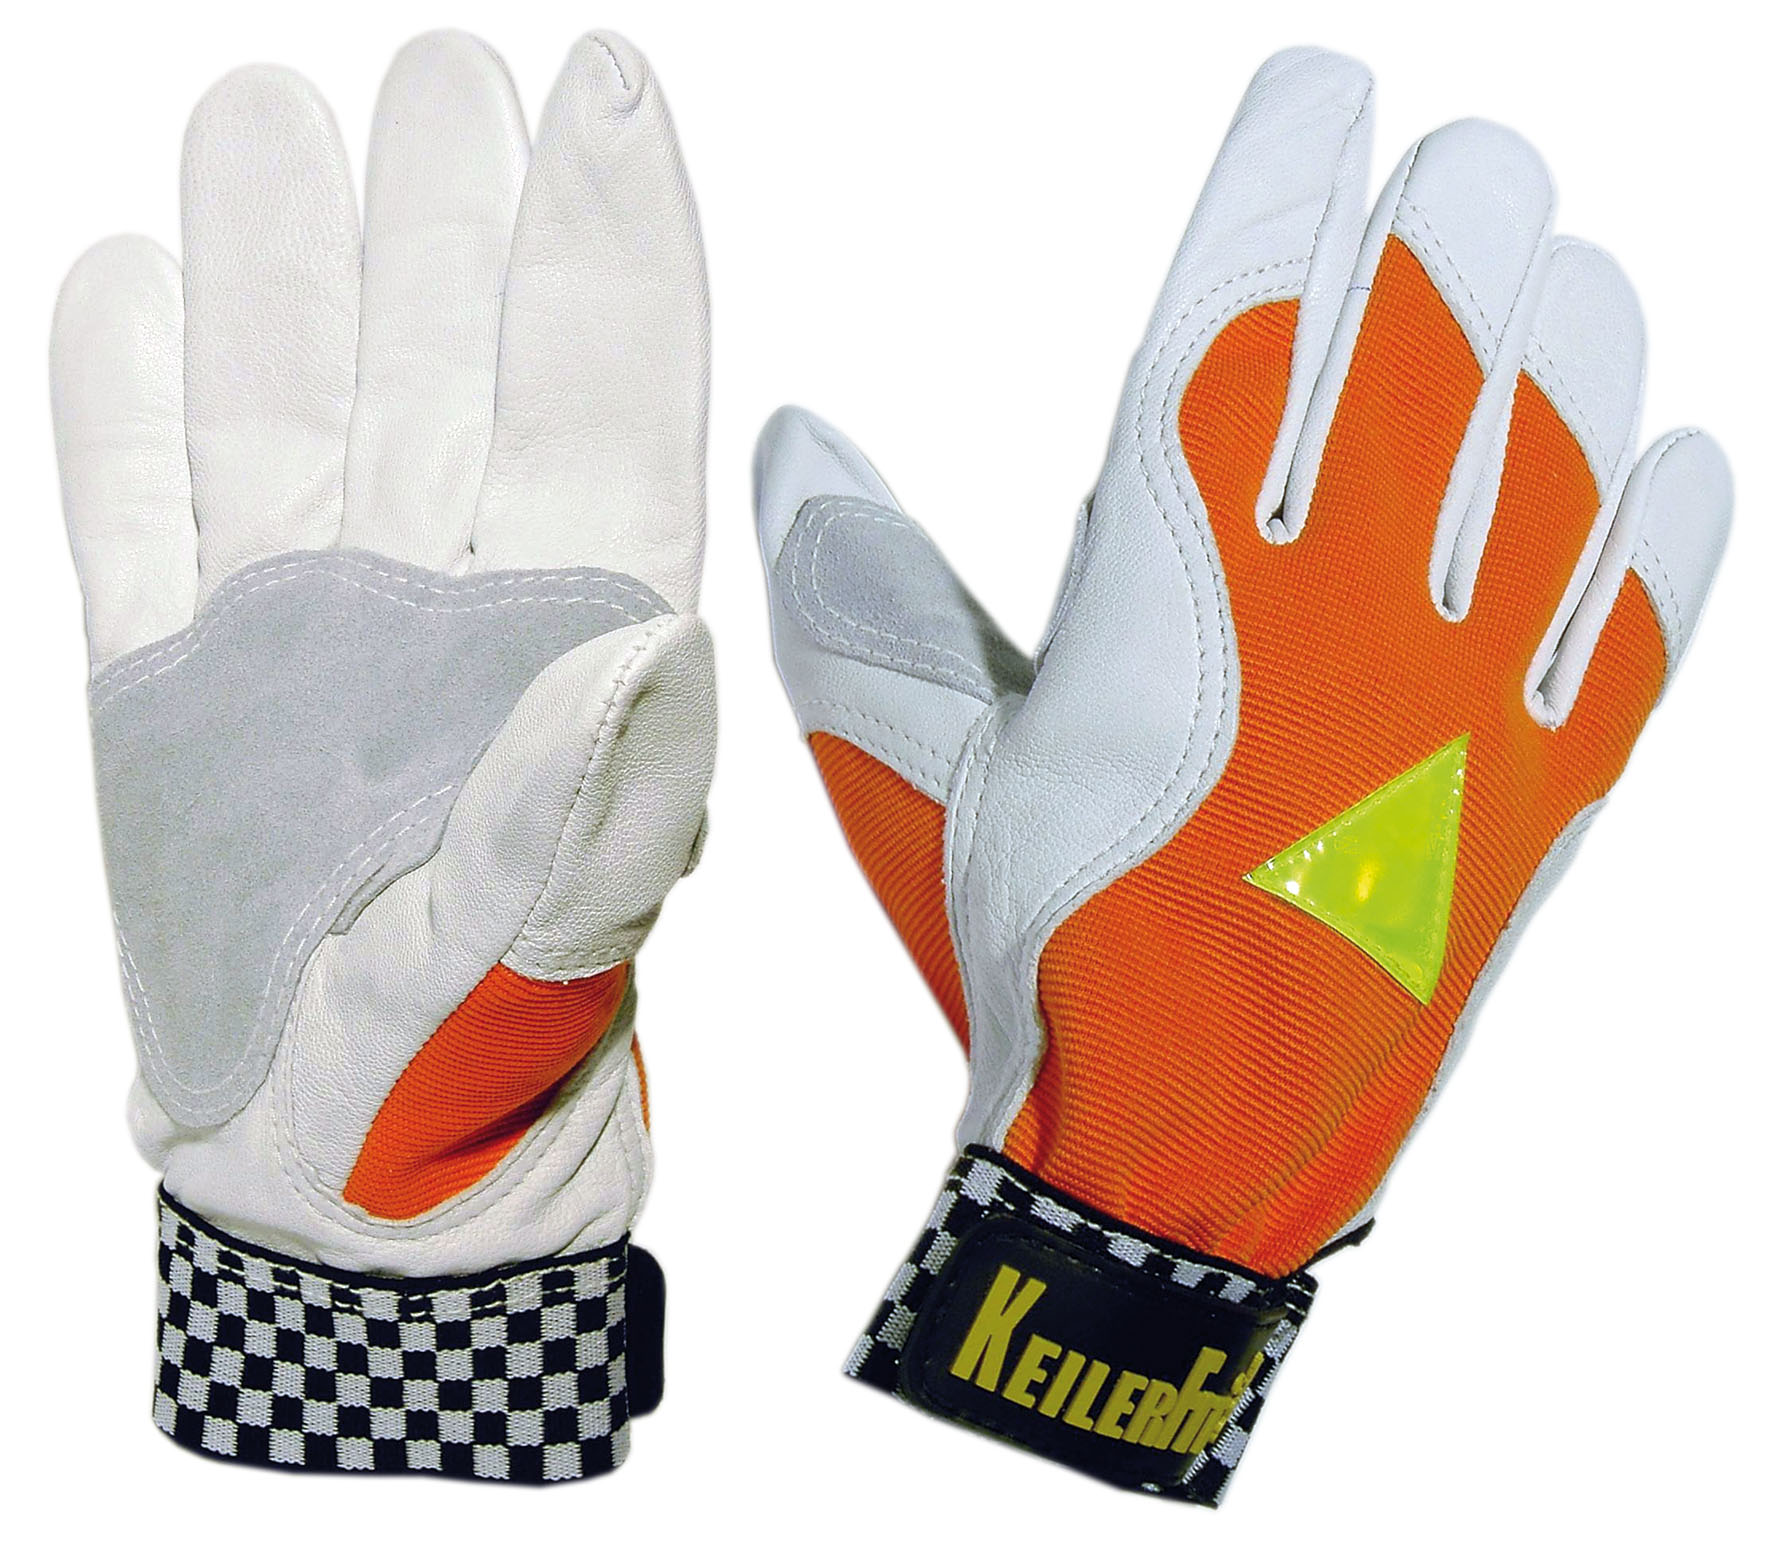 KeilerFit Orange - Handschuh aus weichem Ziegen-Nappaleder mit optischer Warnfunktion